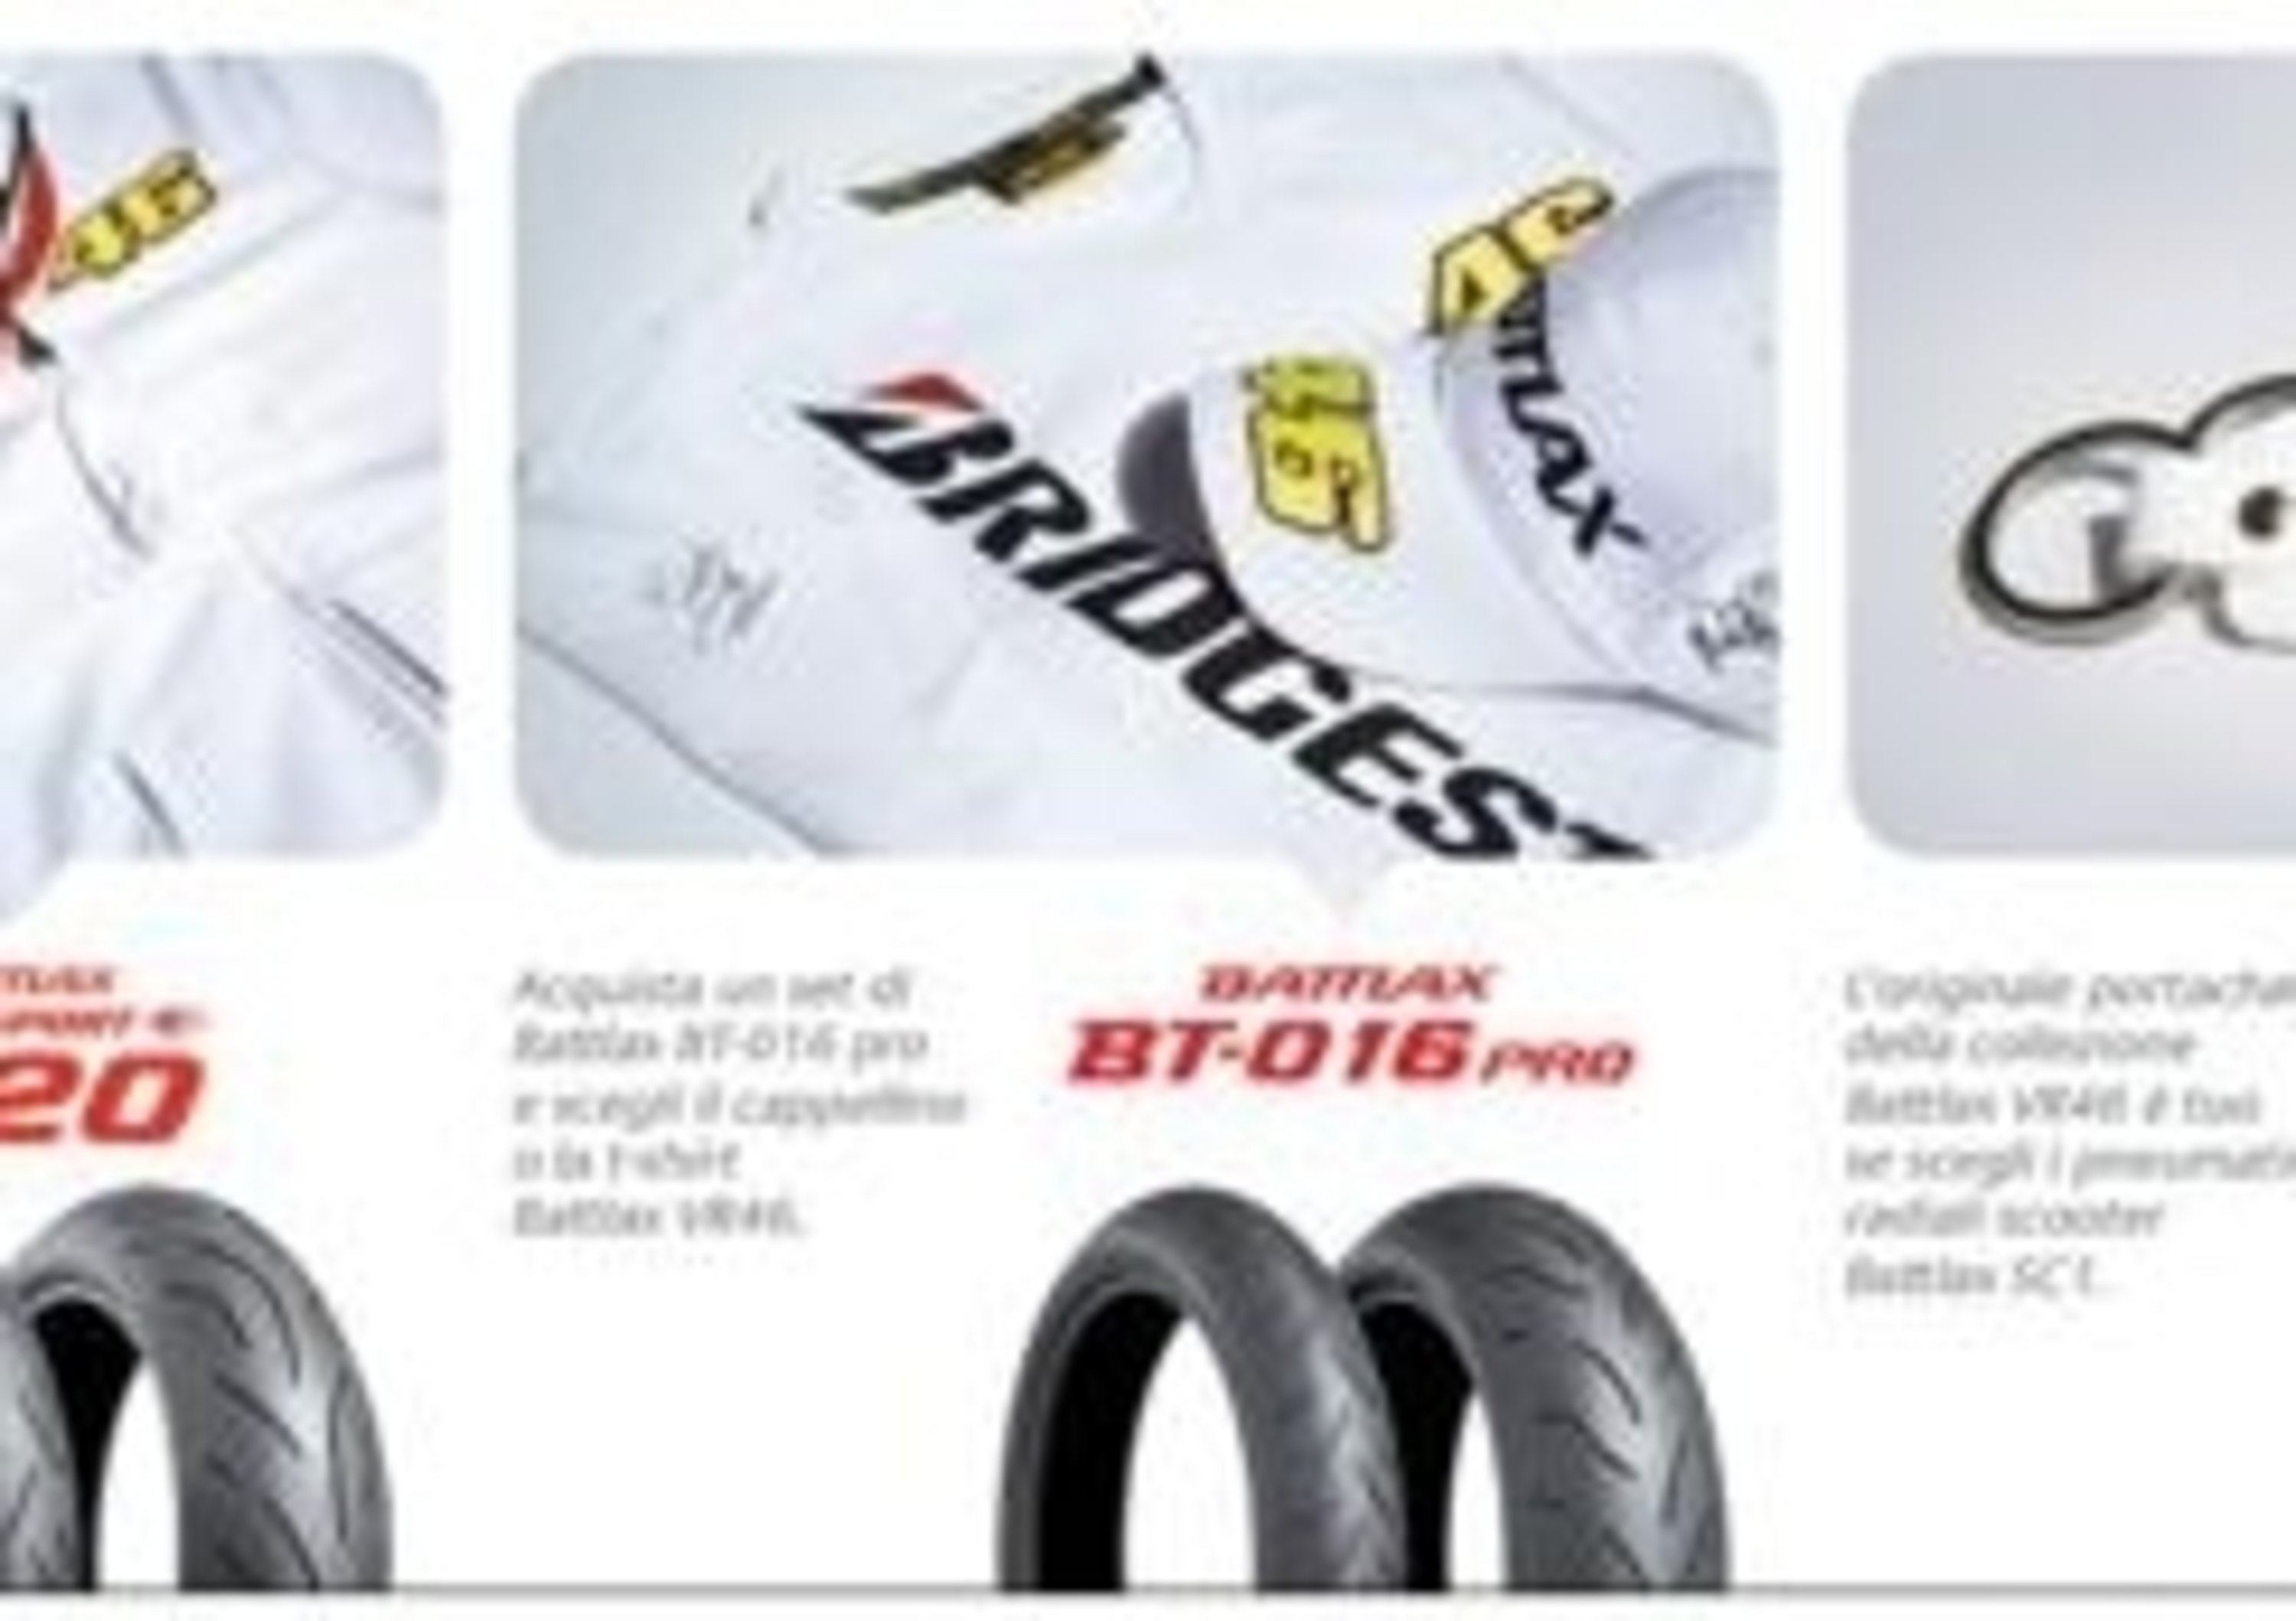 Con i pneumatici Bridgestone in regalo i capi della nuova collezione Battlax VR46